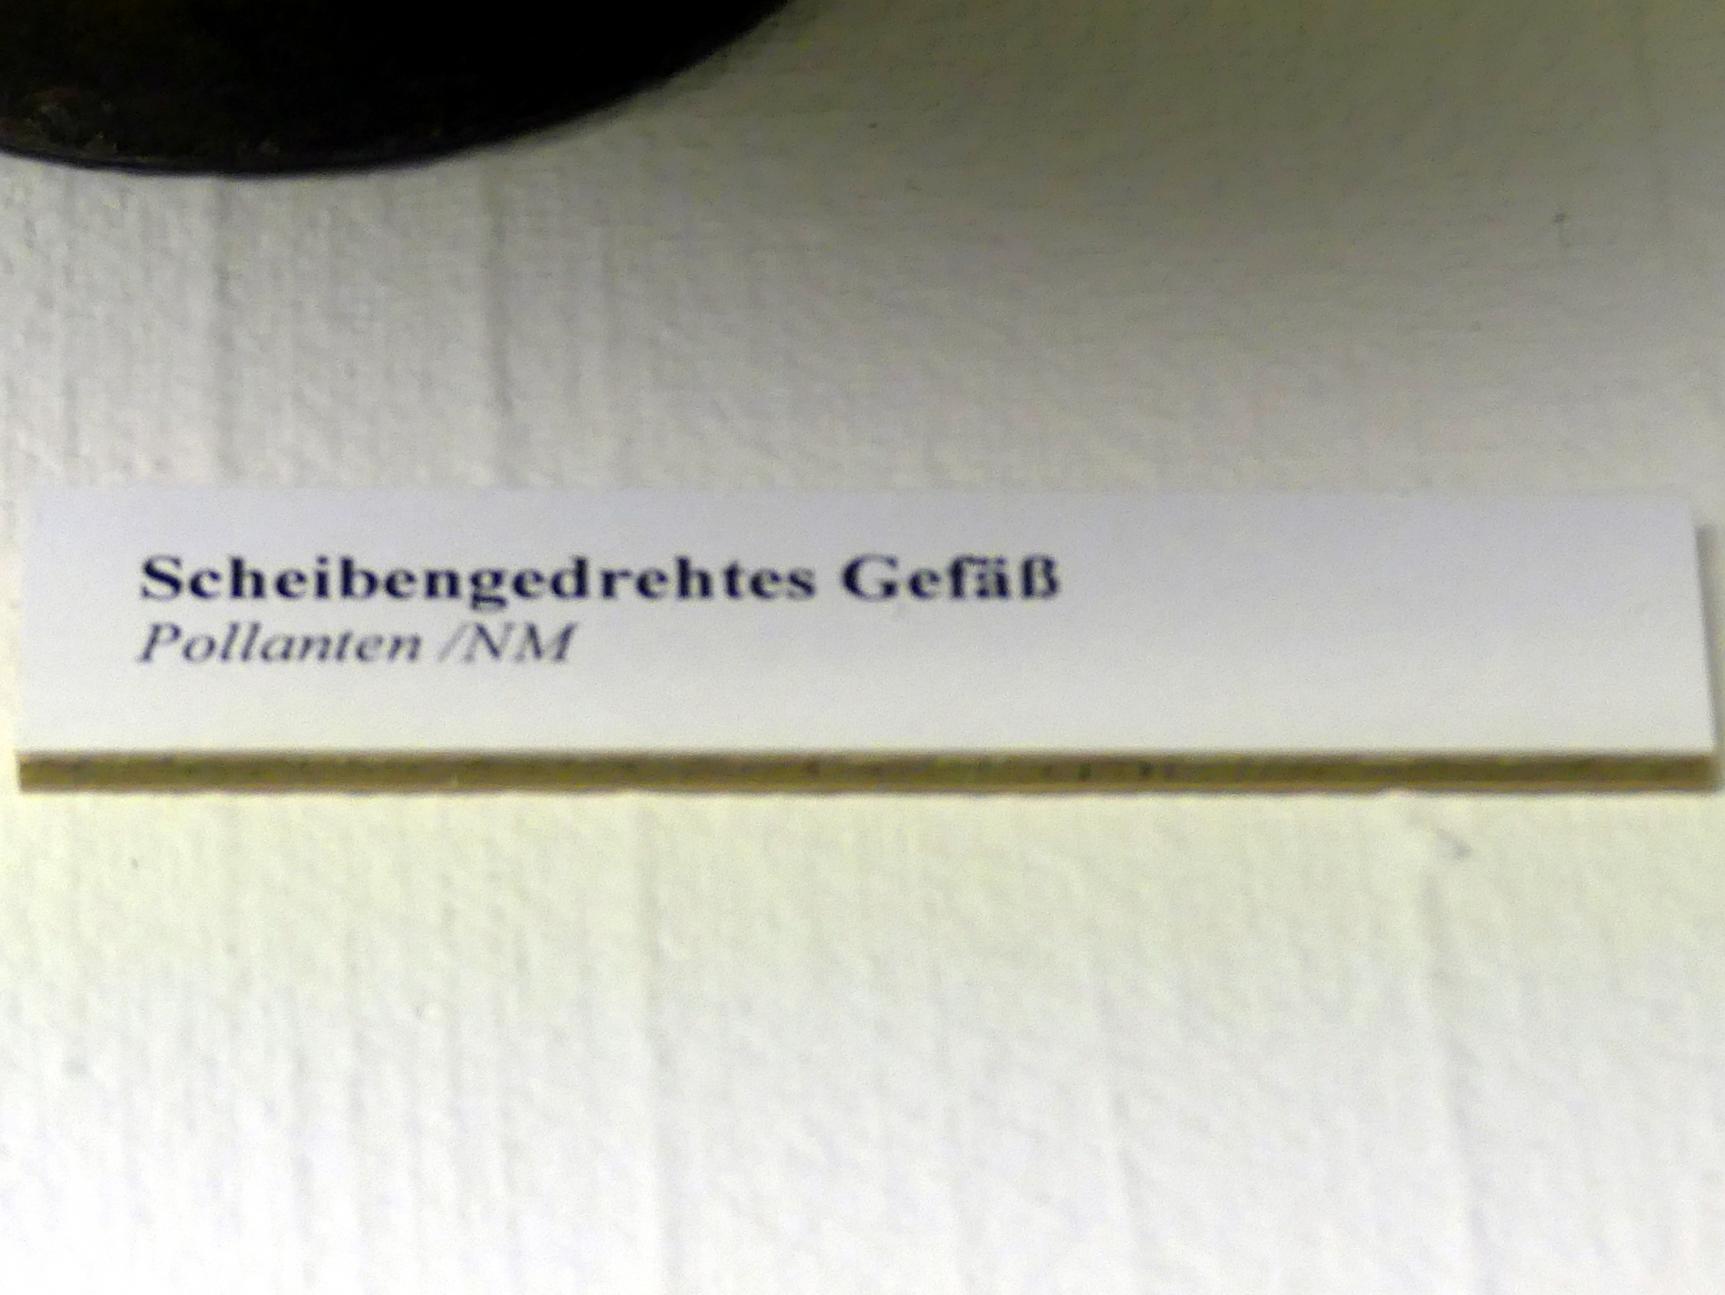 Scheibengedrehtes Gefäß, Spätlatènezeit D, 700 - 100 v. Chr., Bild 2/2